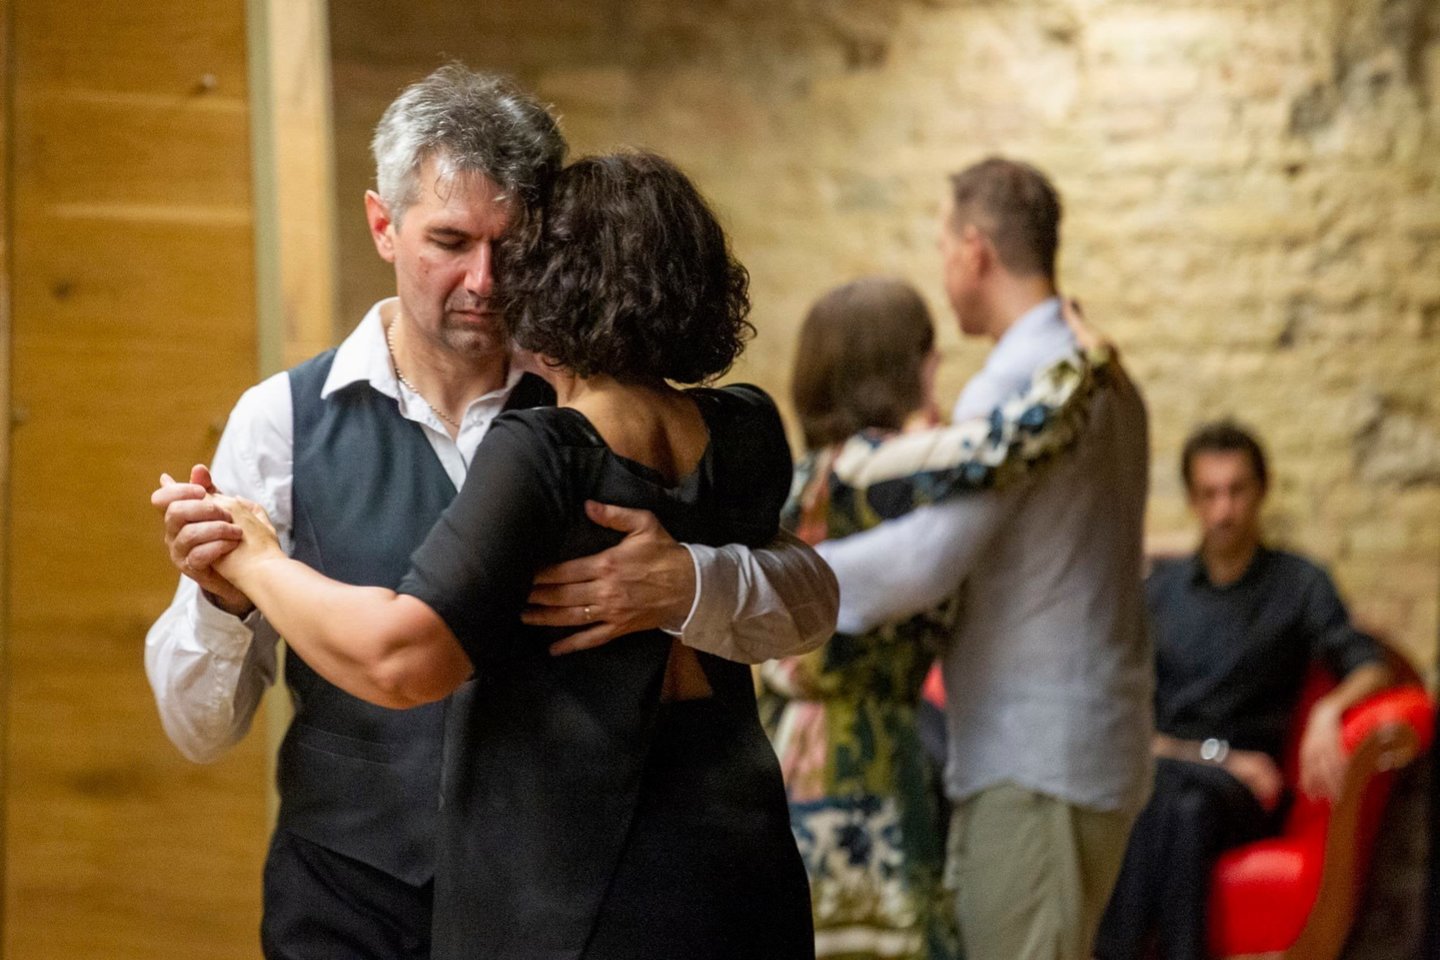  Tango vakarėliuose Helena įprastai šoka su skirtingais partneriais. <br>Nuotr. iš asmeninio albumo